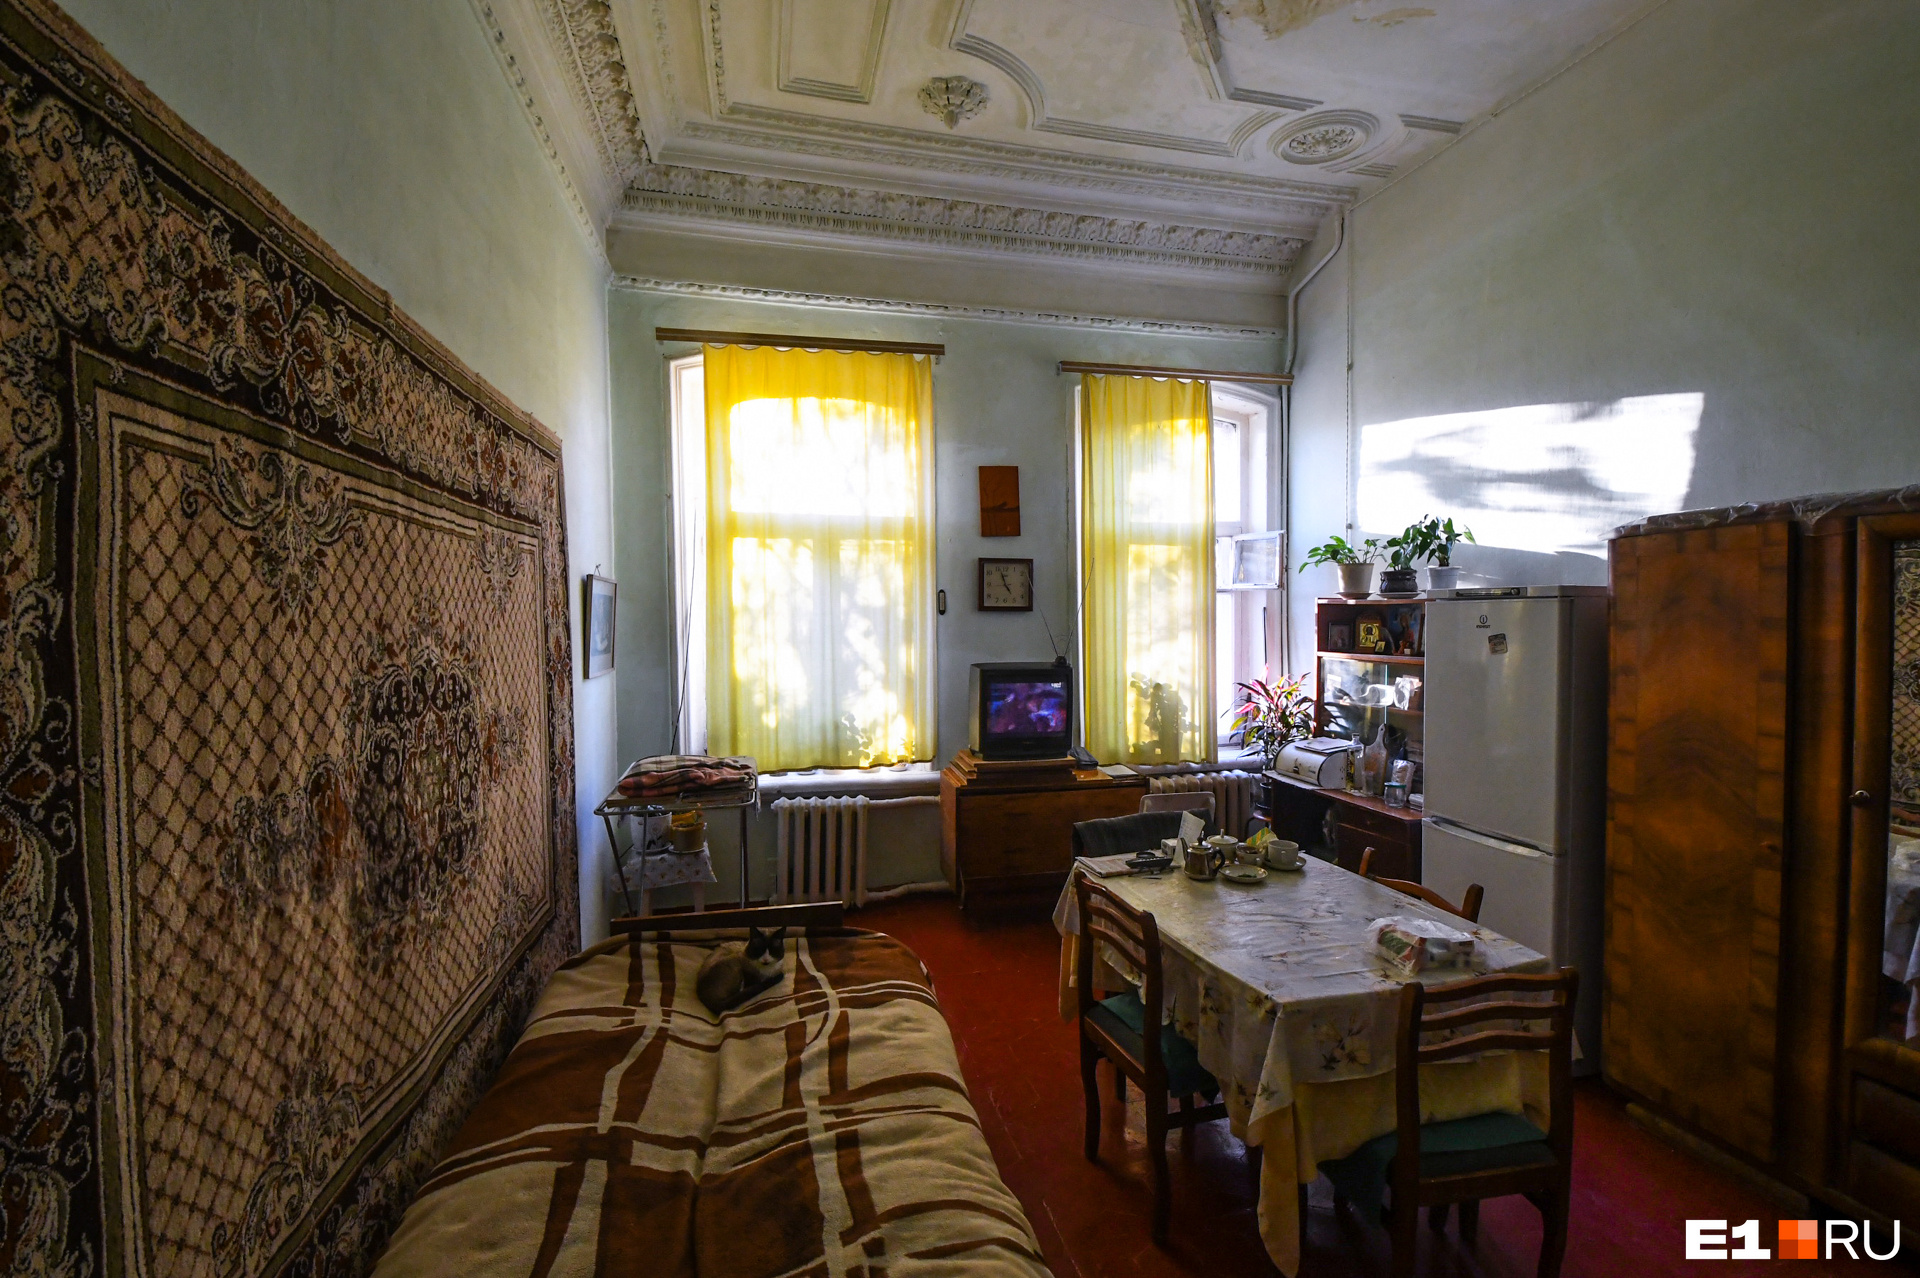 Крохотная квартира Алевтины Михайловны с шикарным потолком